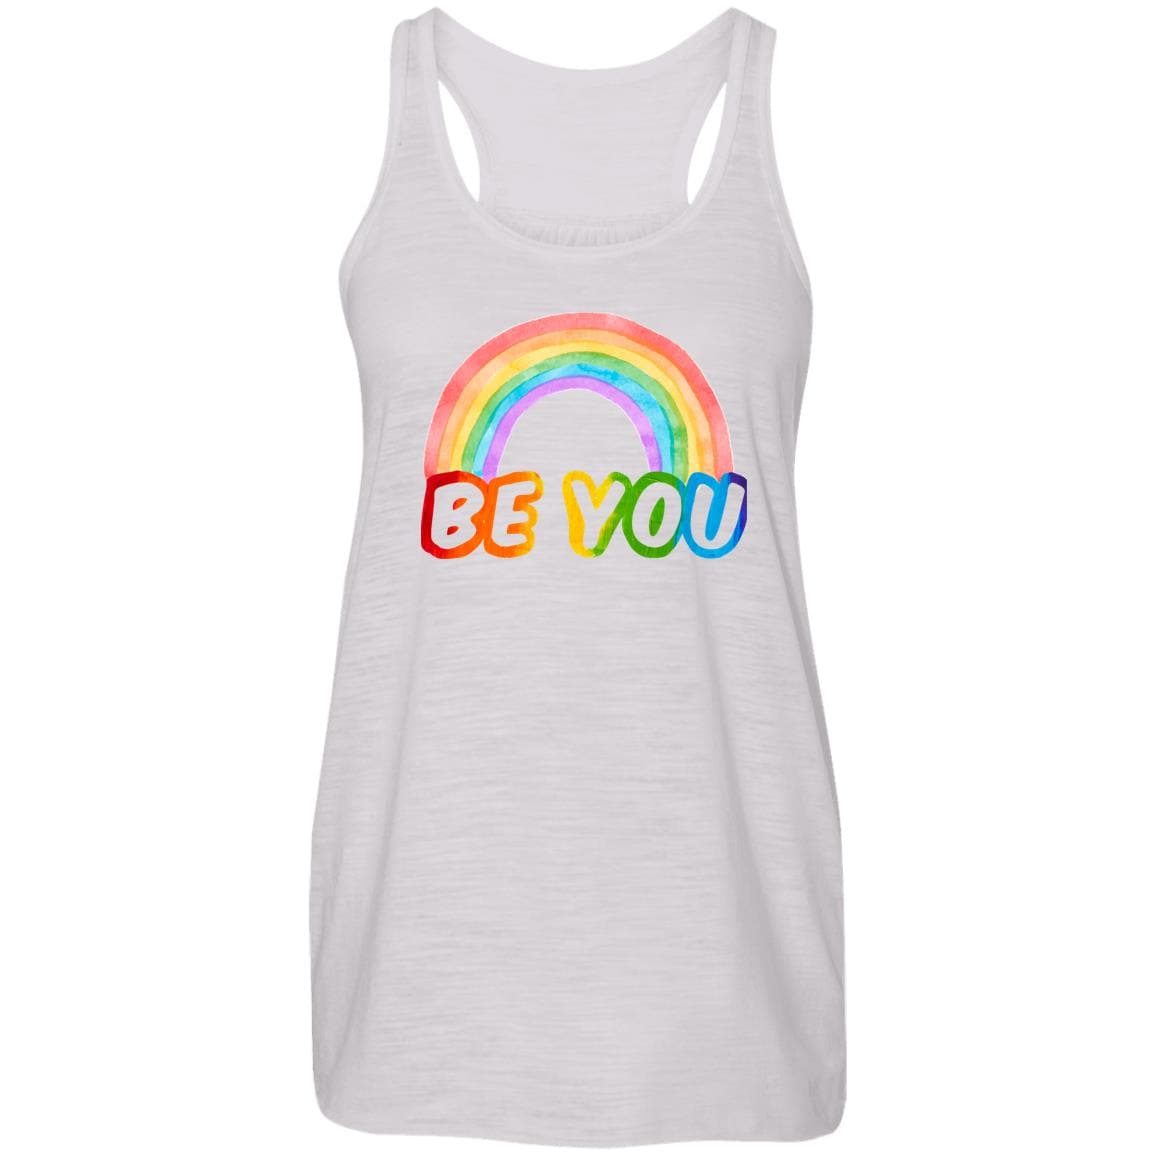 Be You Vibrant Rainbow Pride T shirt & Hoodie - PrideBooth